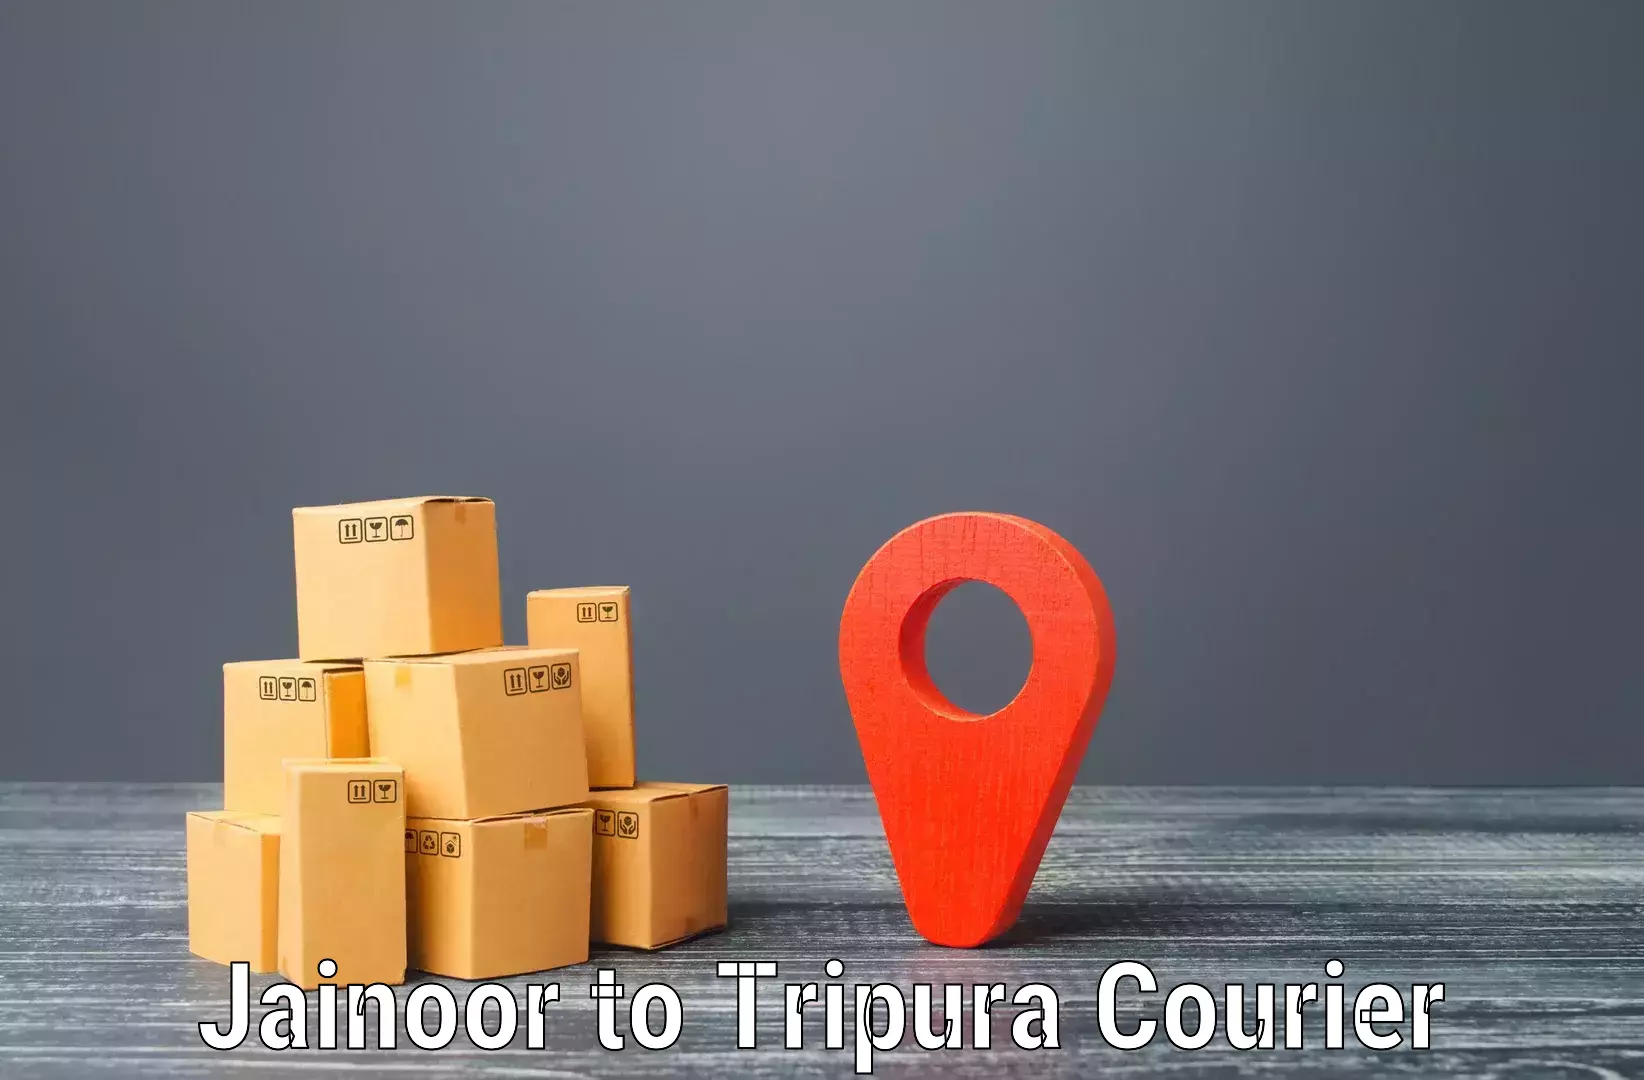 Comprehensive delivery network Jainoor to Tripura